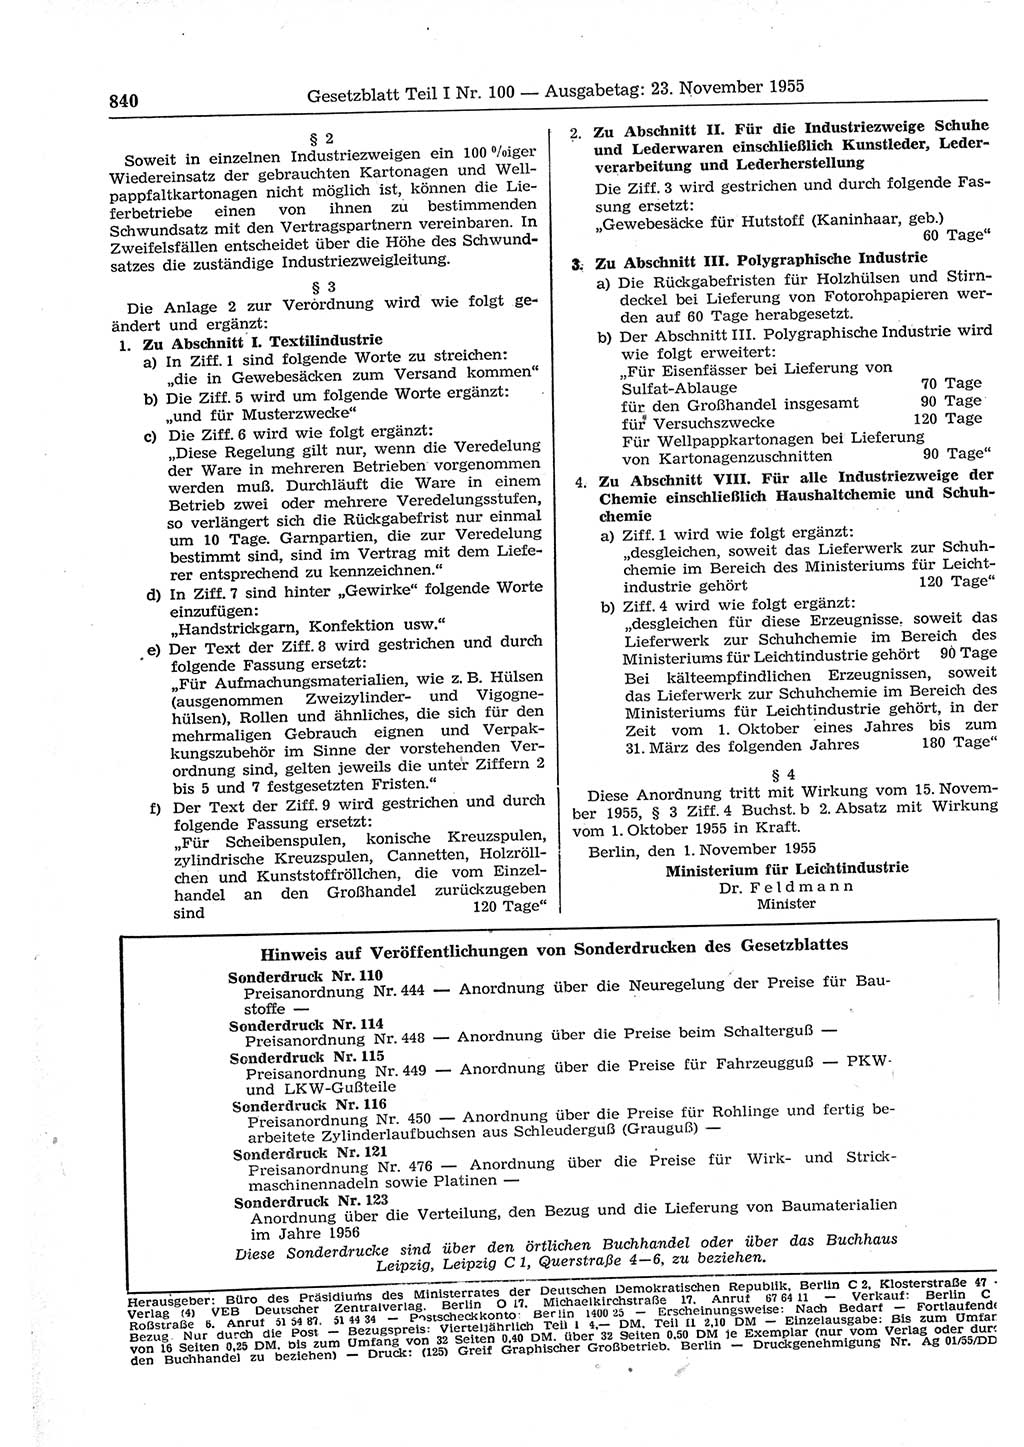 Gesetzblatt (GBl.) der Deutschen Demokratischen Republik (DDR) Teil Ⅰ 1955, Seite 840 (GBl. DDR Ⅰ 1955, S. 840)